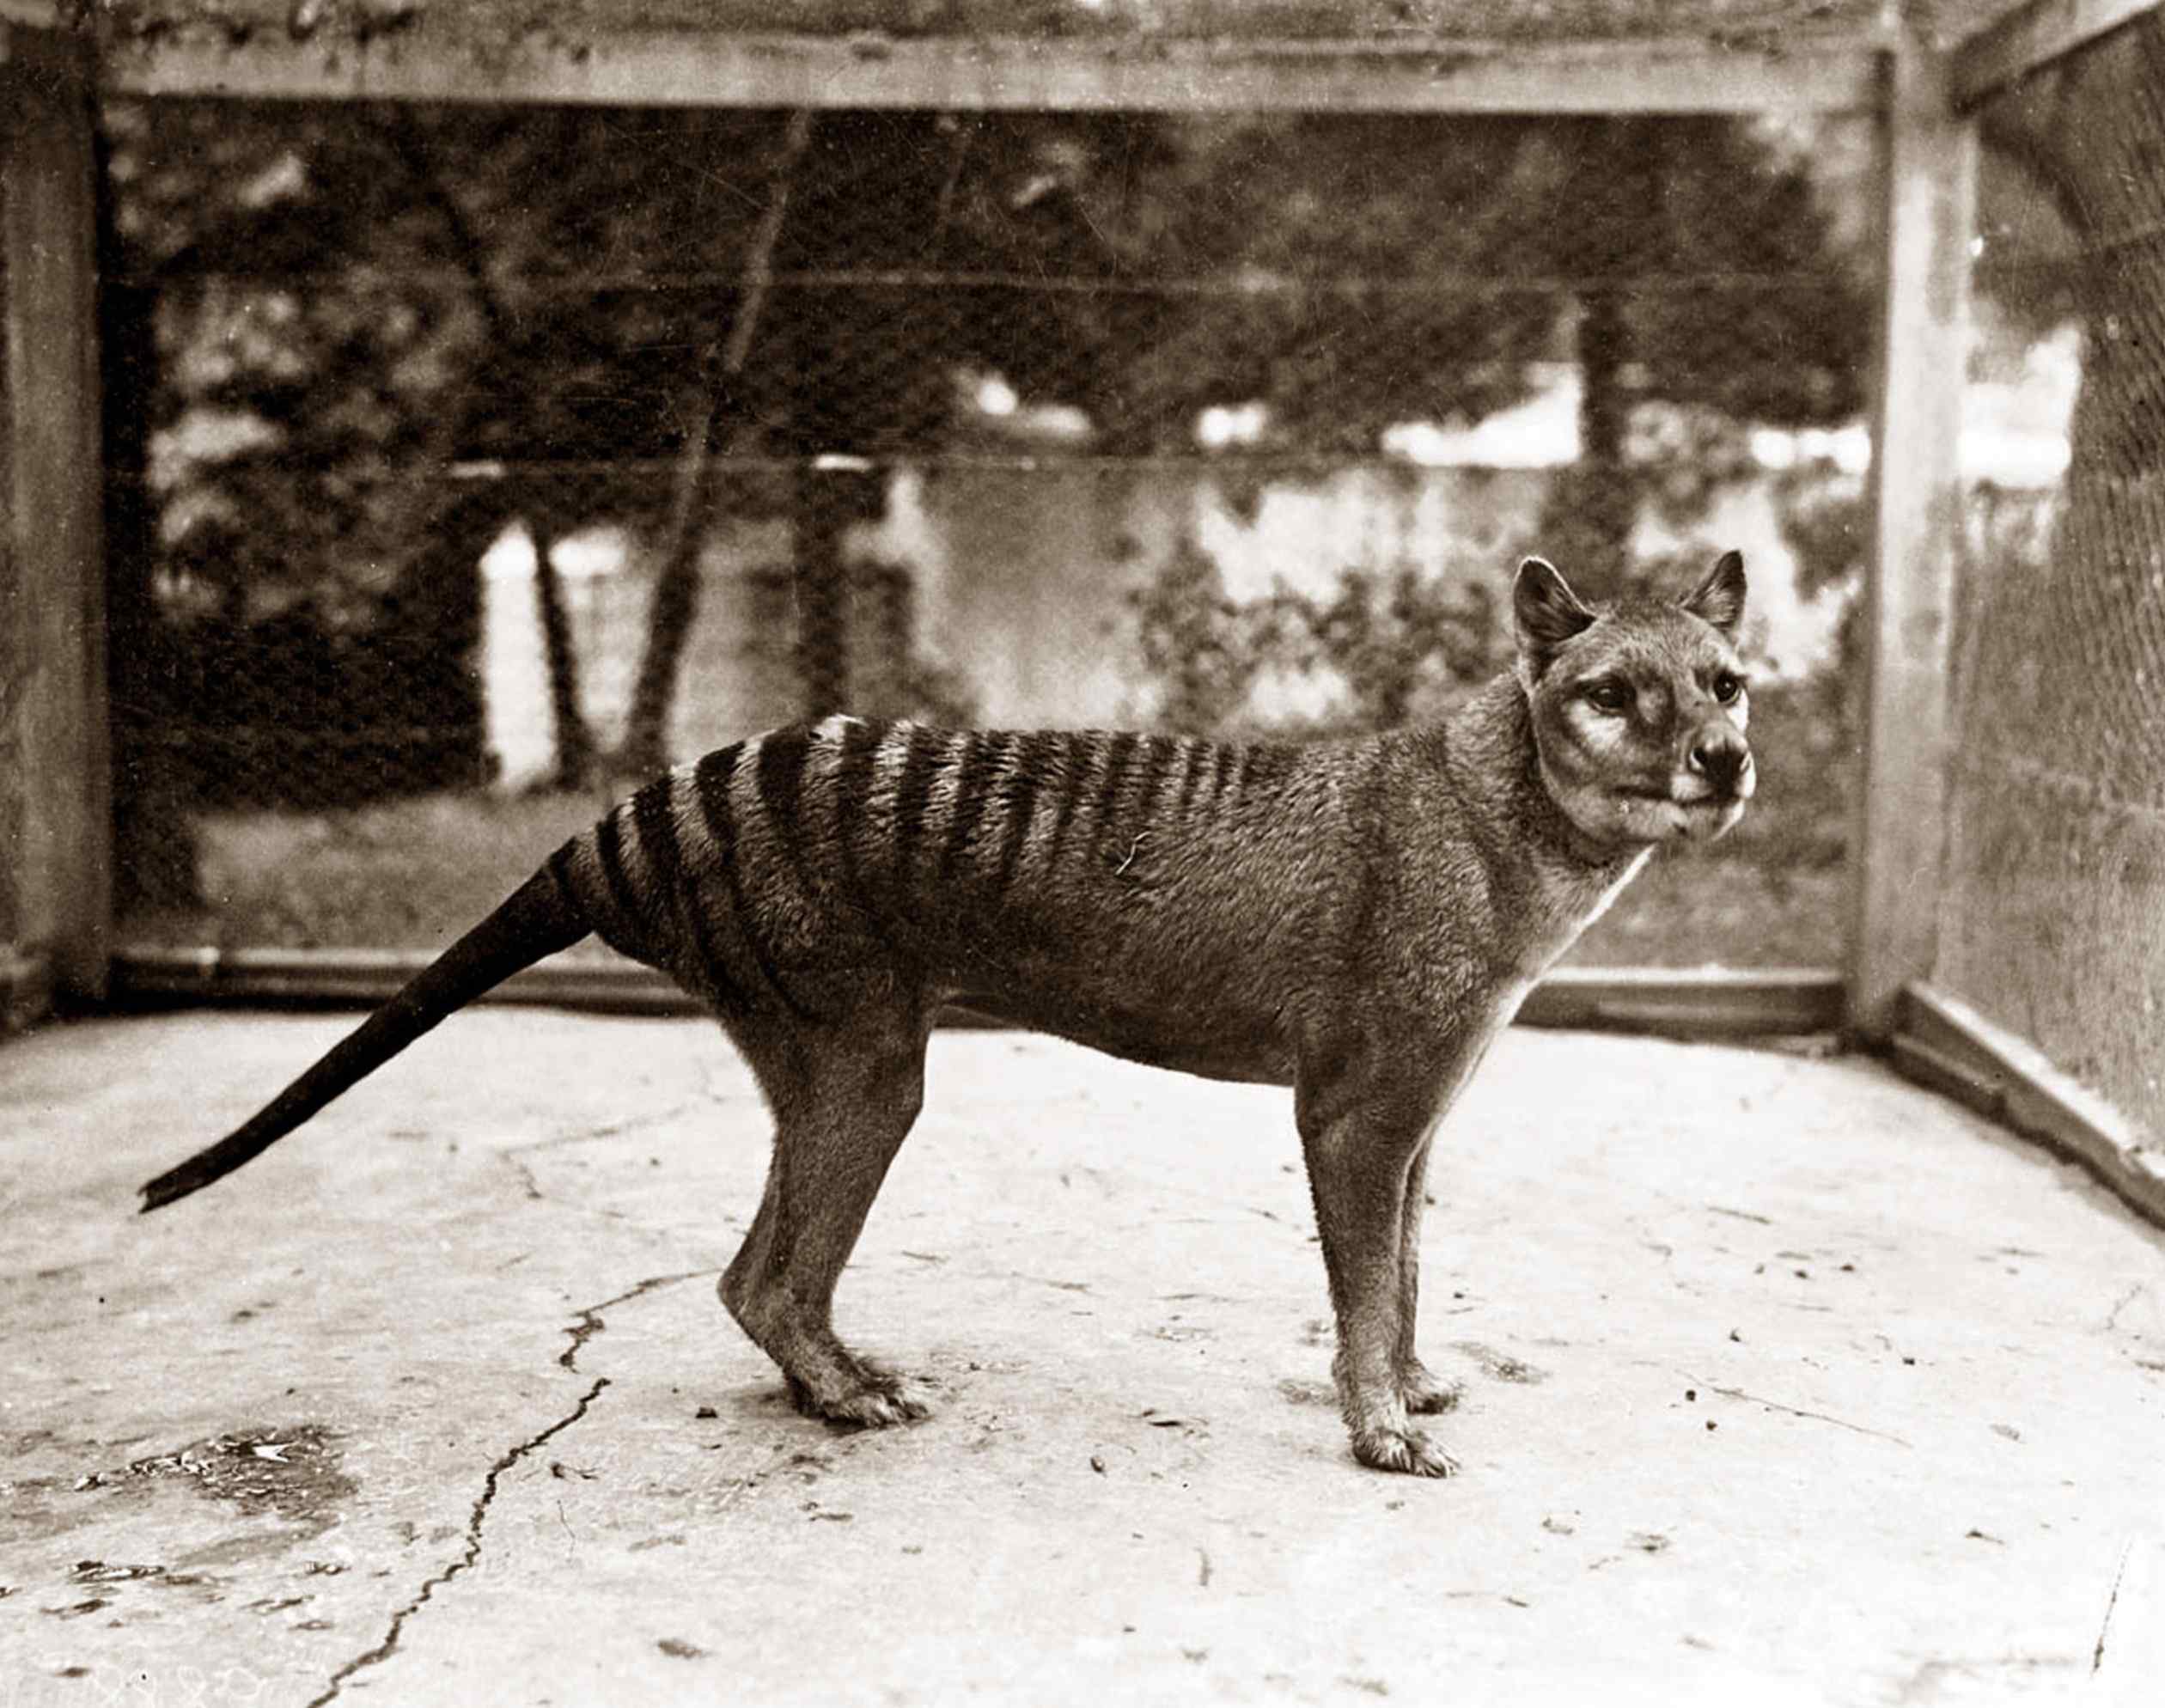 Le dernier tigre de Tasmanie connu est mort en captivité en 1936. Mais une étude suggère des centaines d'autres observations au XXe siècle.